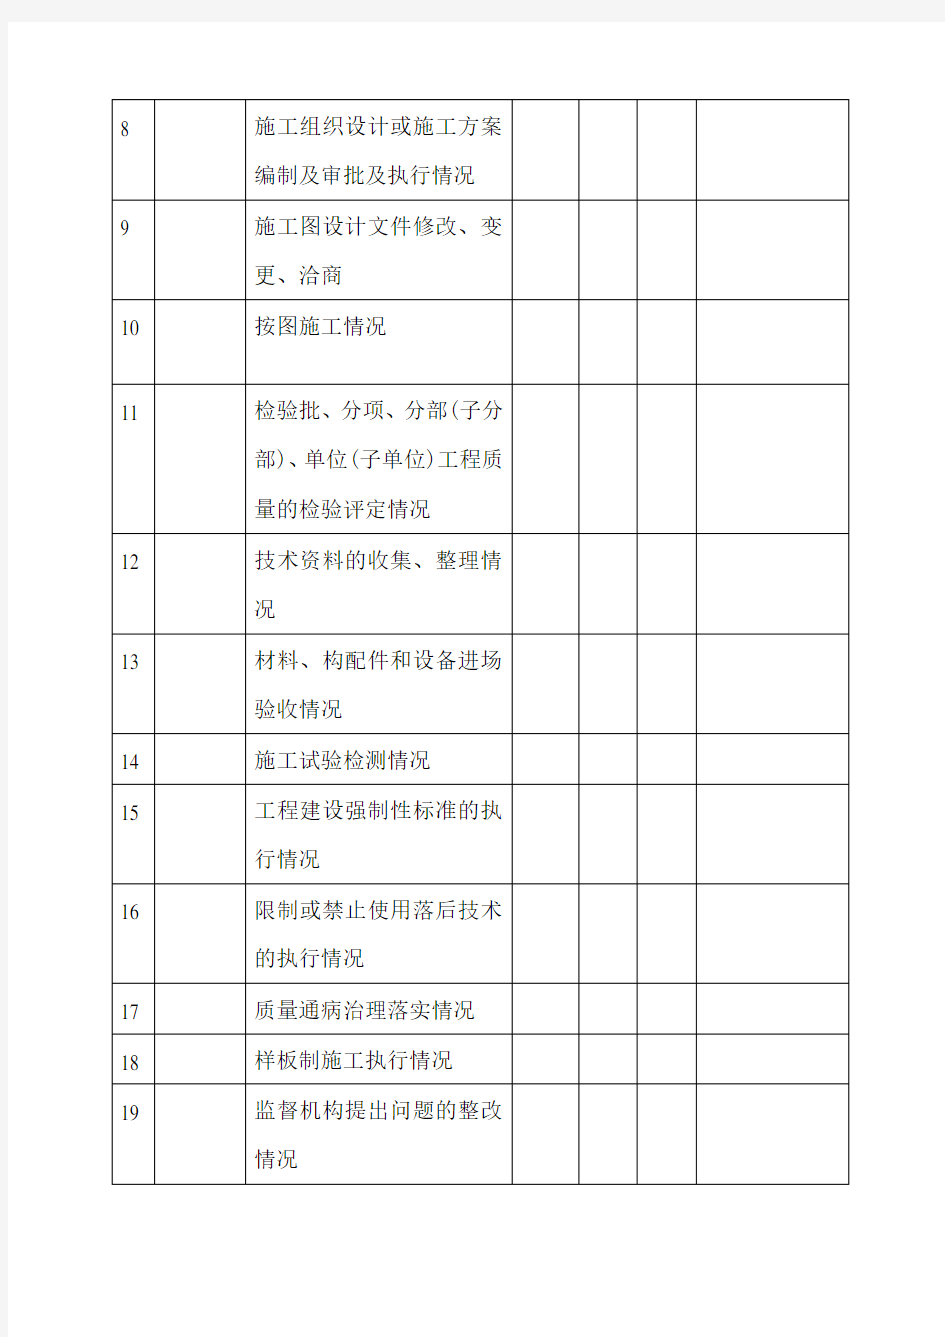 重庆市建筑施工企业诚信综合评价体系企业质量行为评价简表